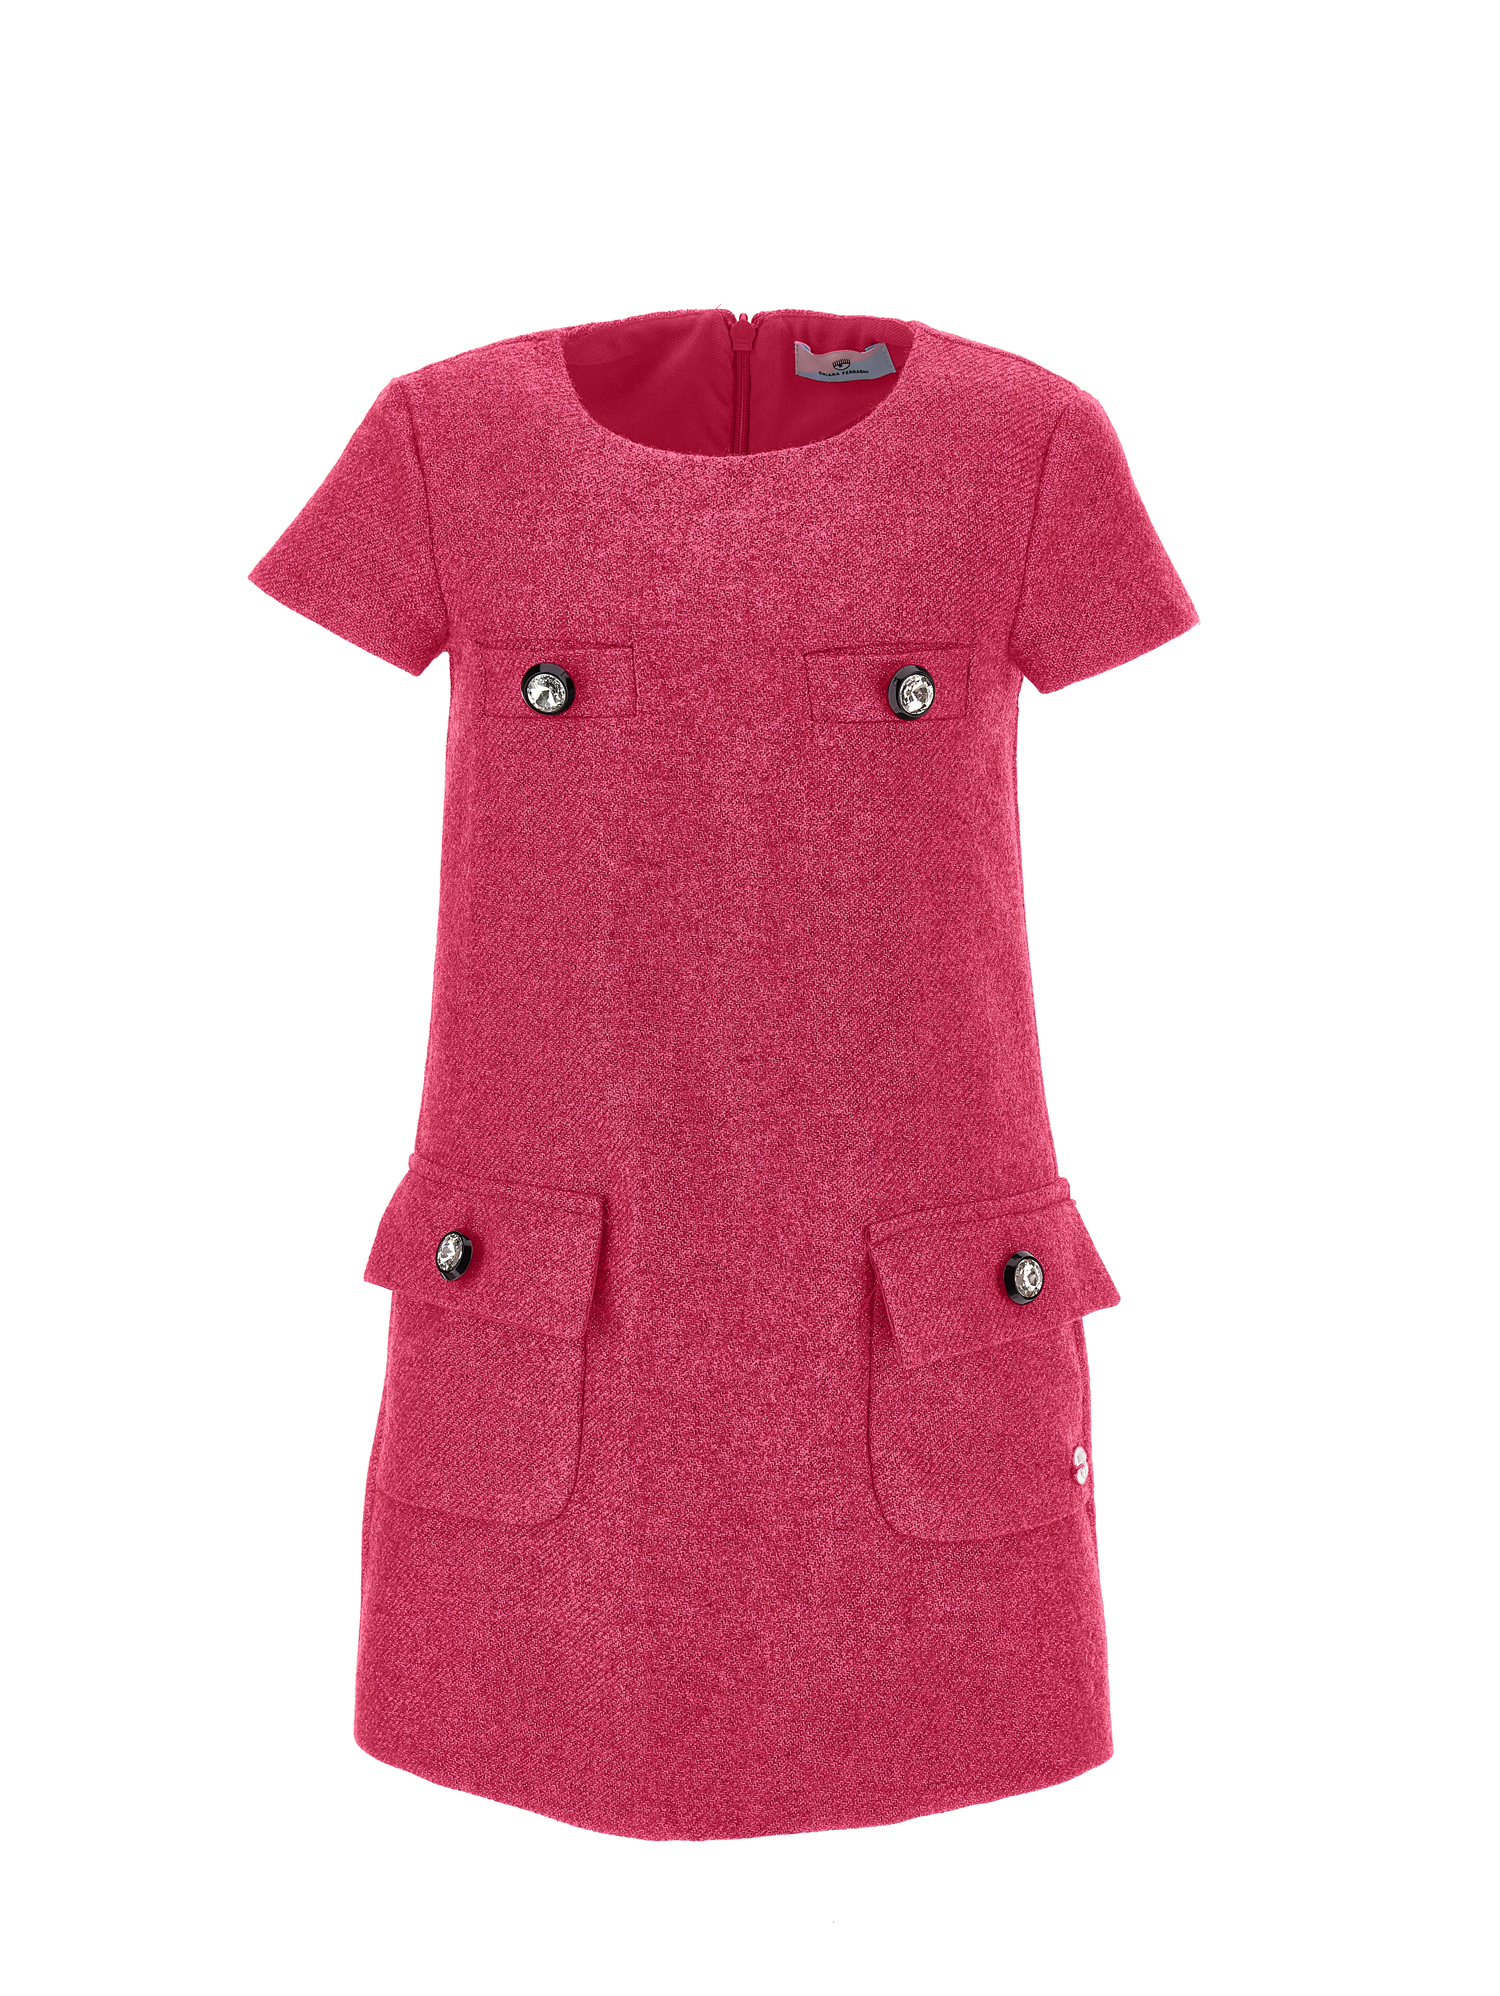 Chiara Ferragni Kids'   Short-sleeved Dresses In Fuchsia Red